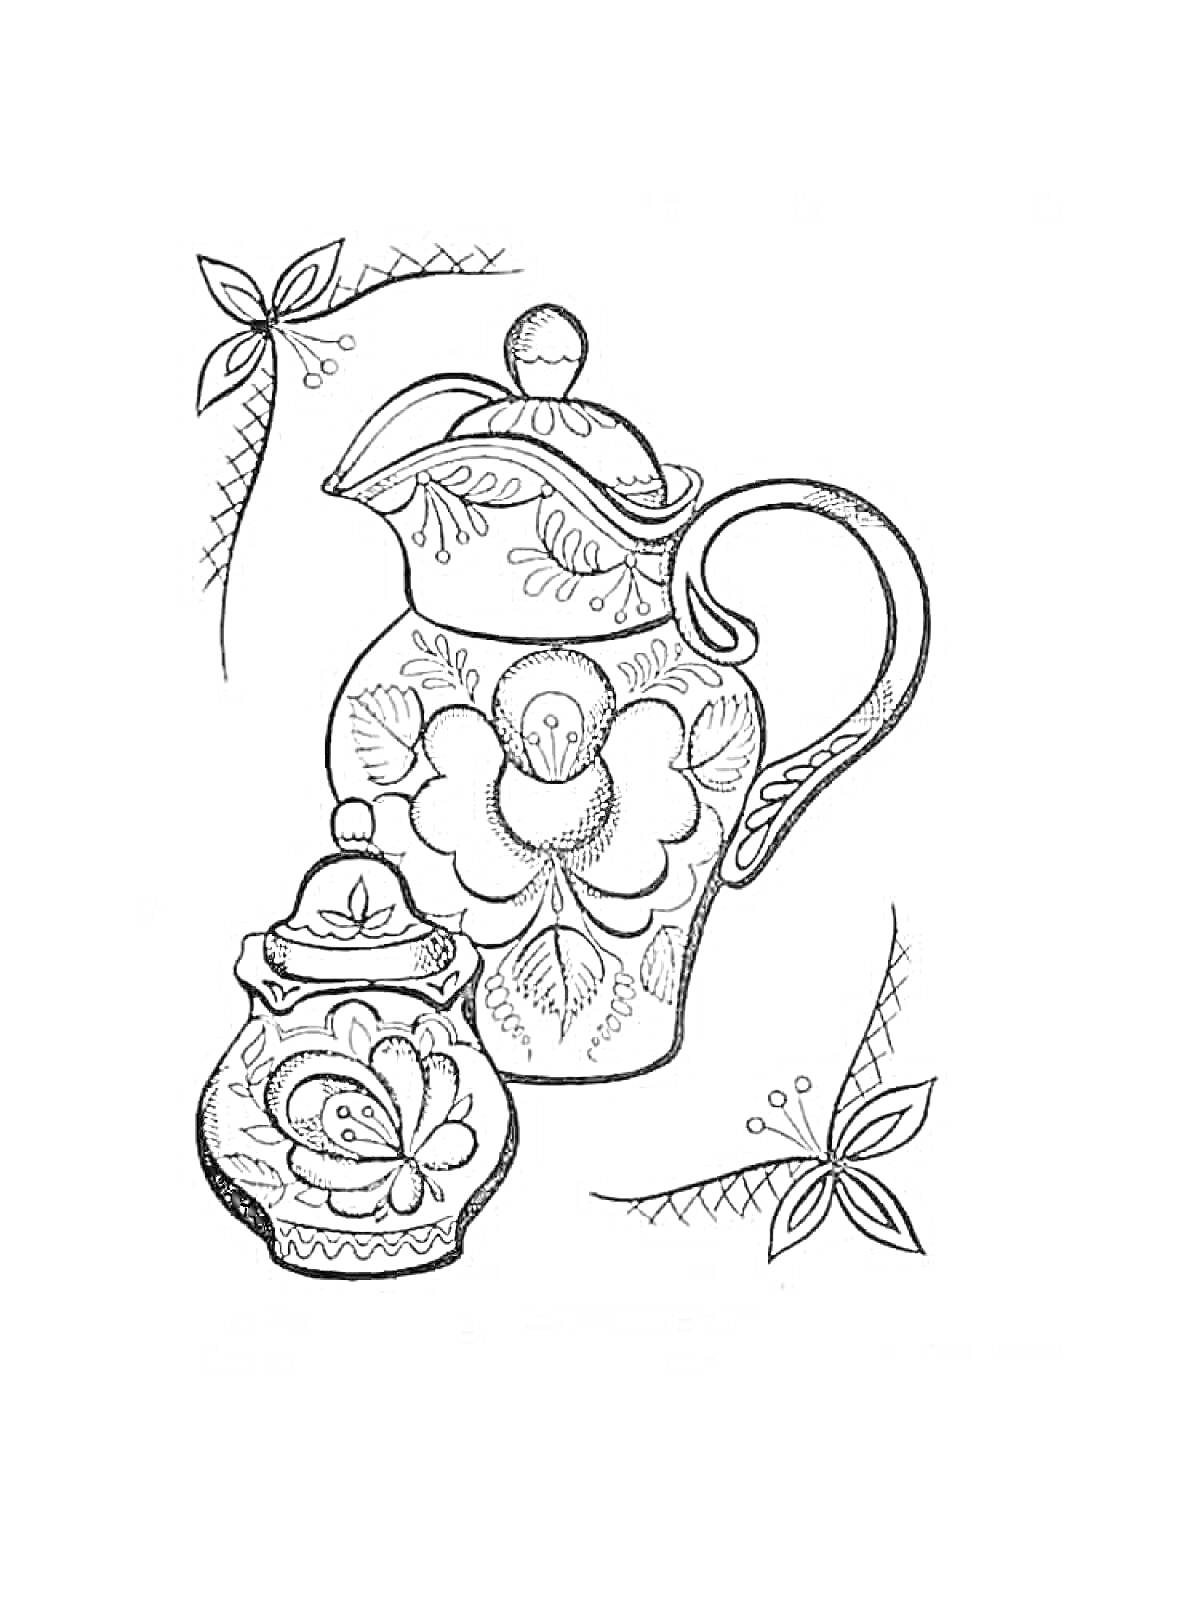 Раскраска Гжельская роспись с кувшином и сахарницей, украшенными цветами и листьями